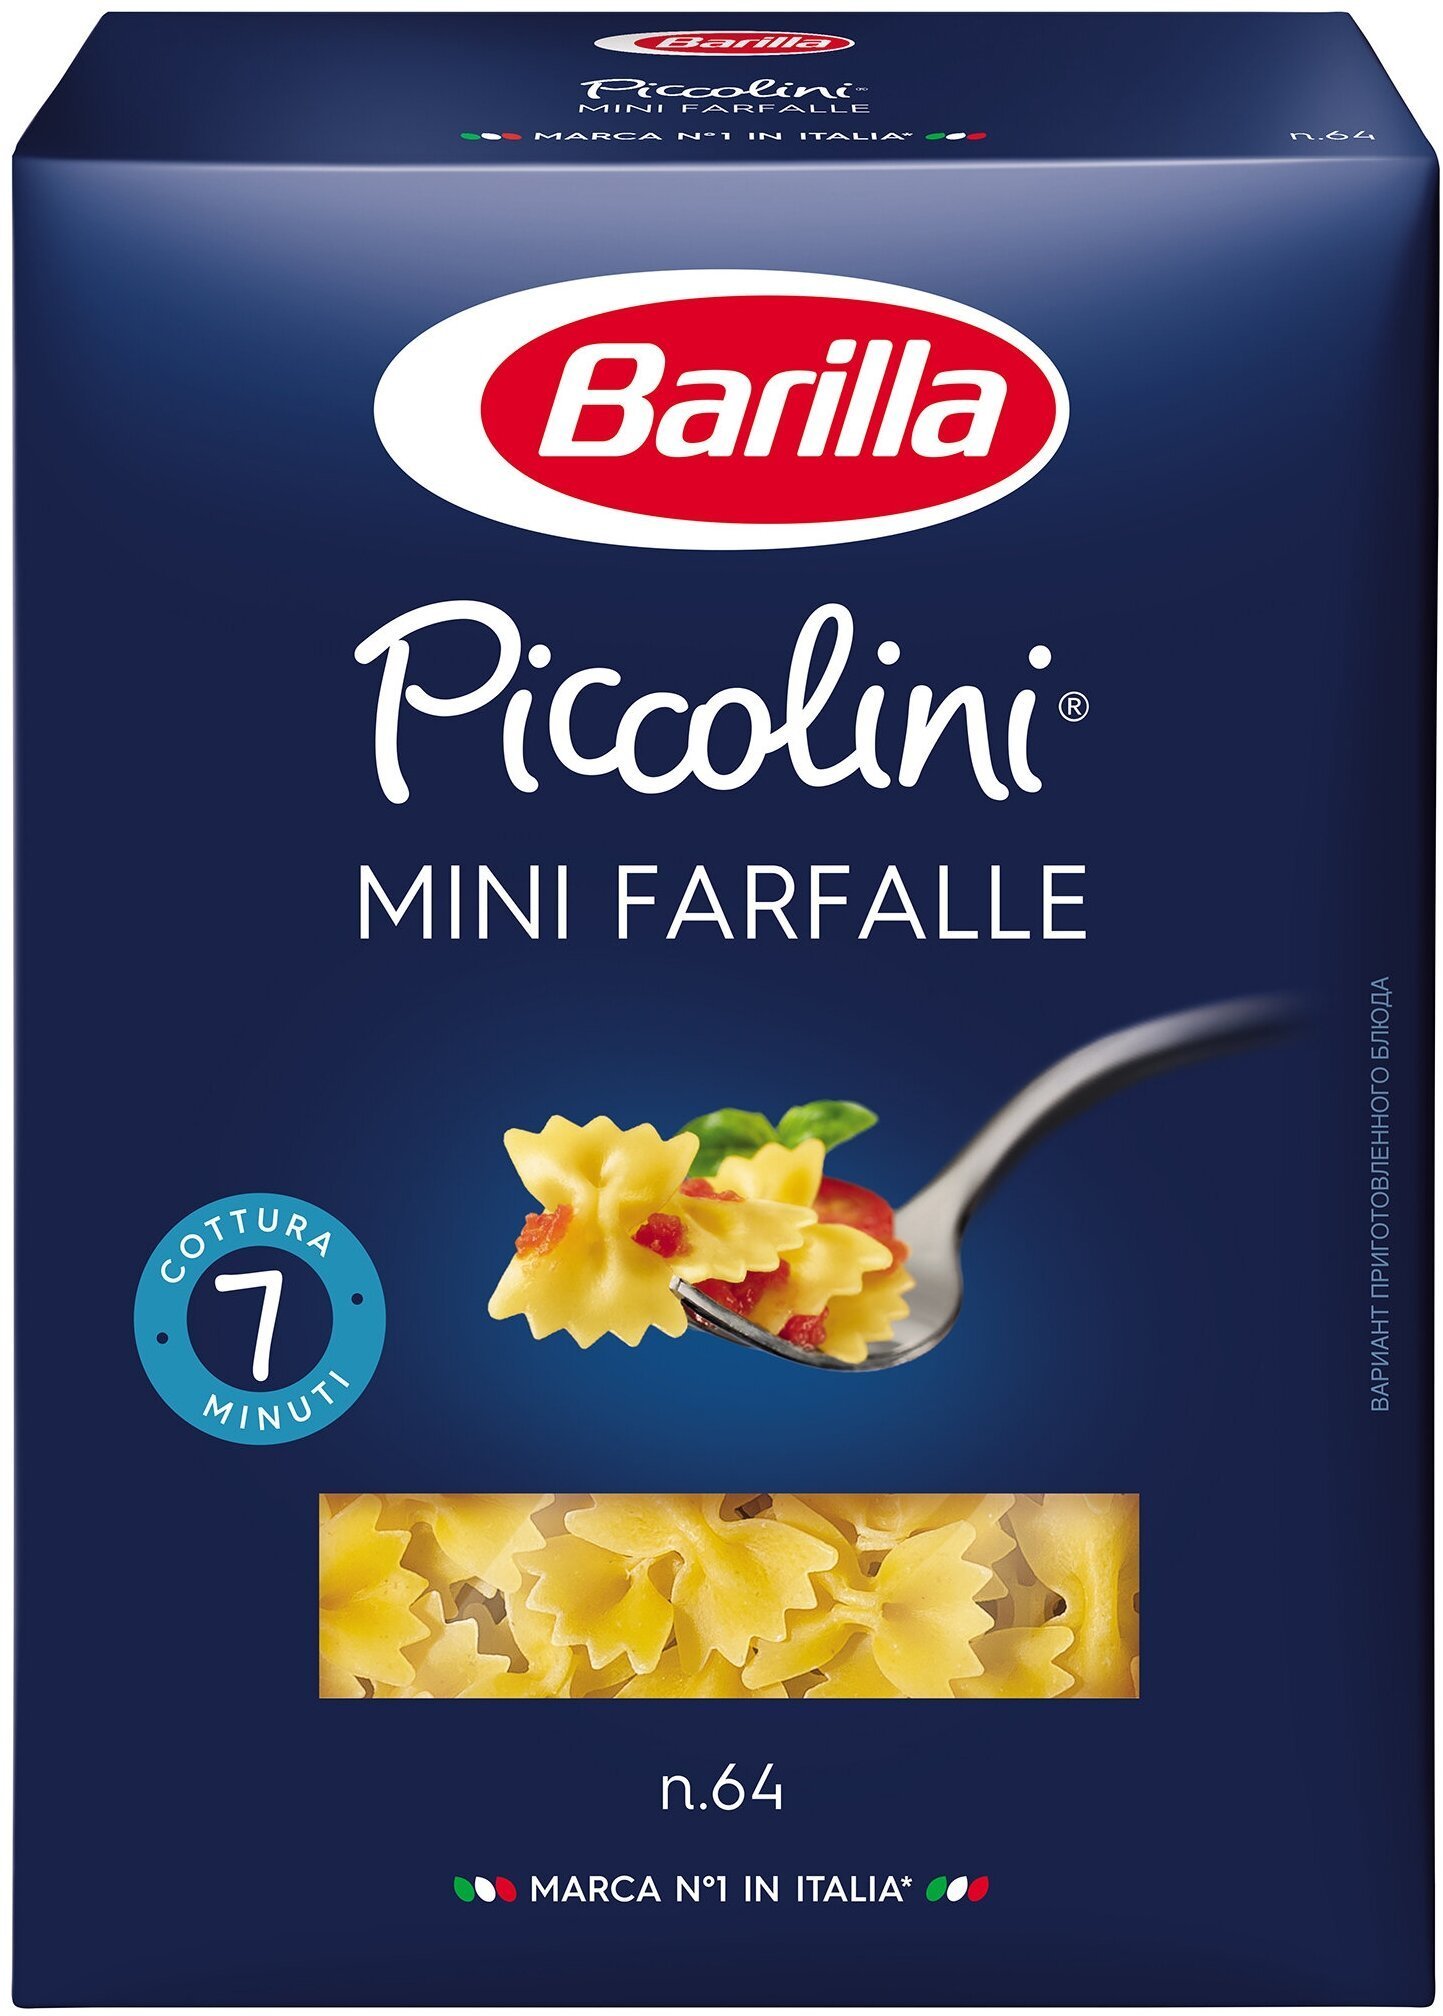 

Макароны Barilla Piccolini Mini Farfalle, 500 г (DL3571)